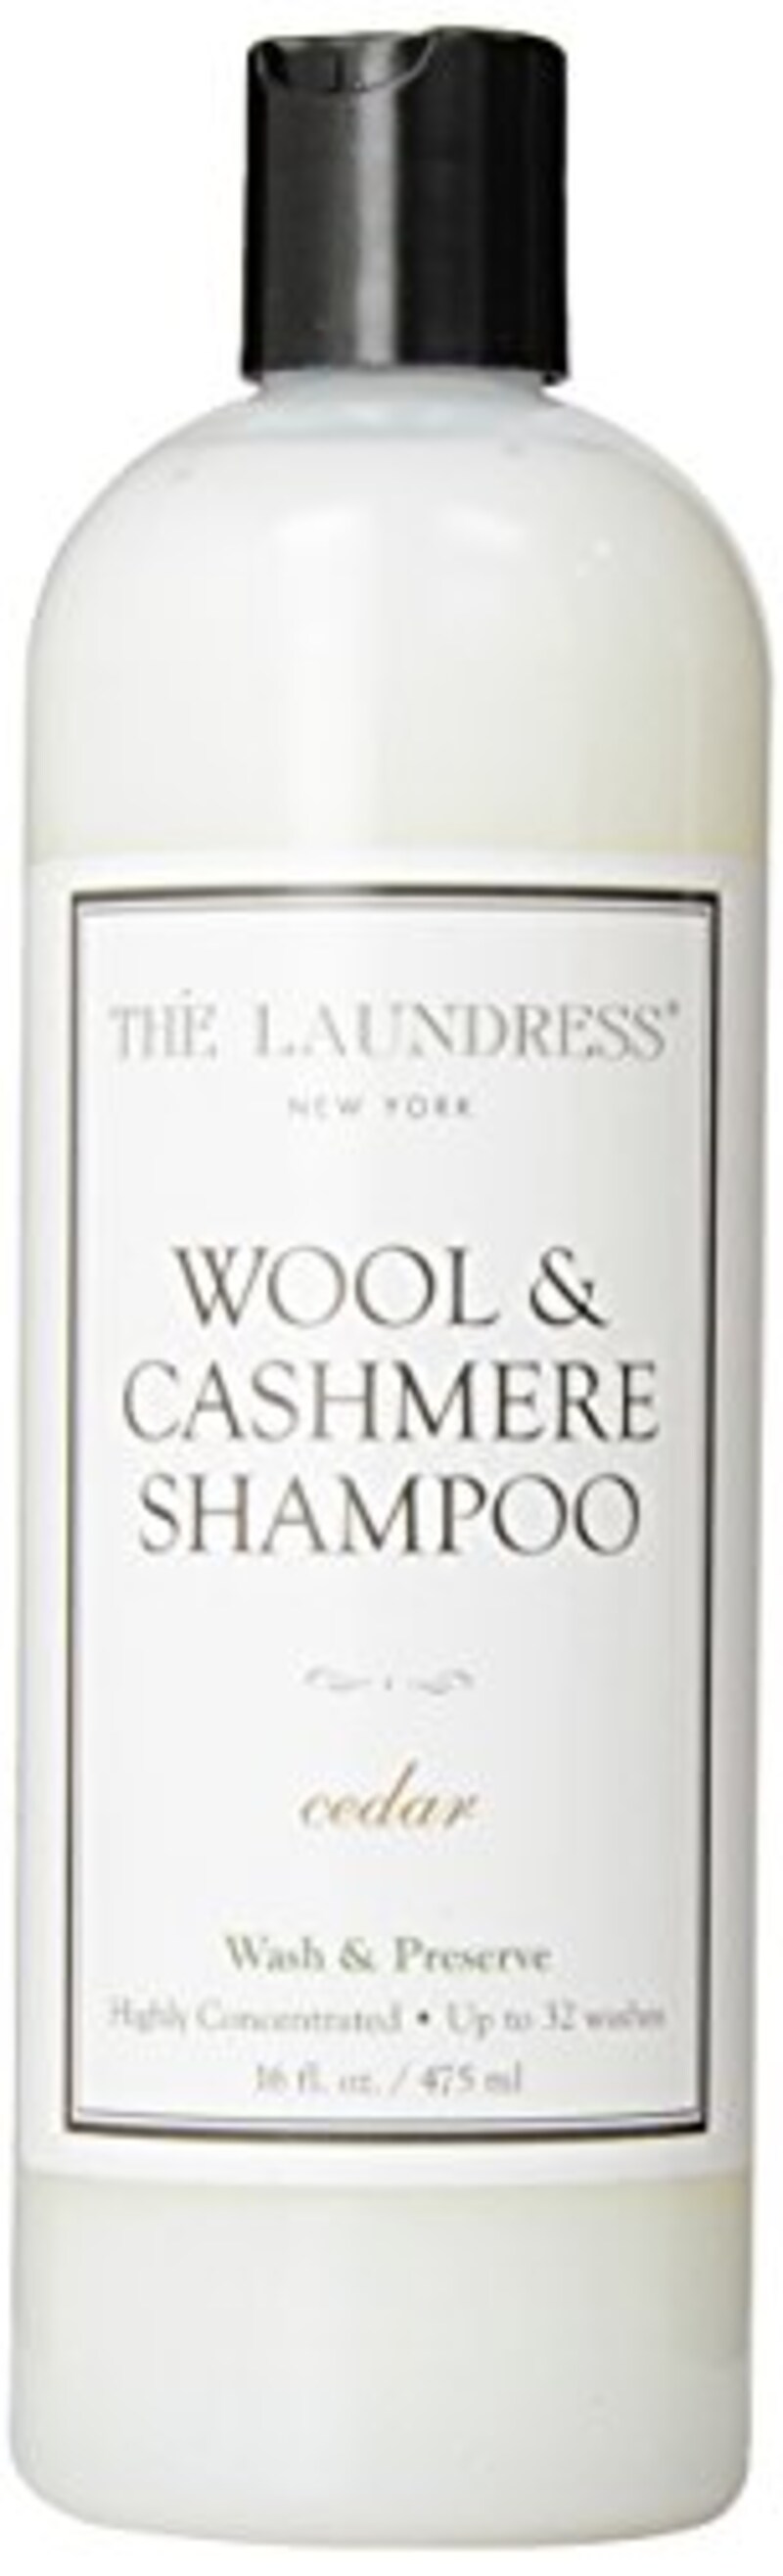 THE LAUNDRESS（ザ・ランドレス）,ウールカシミアシャンプー cedarの香り475ml